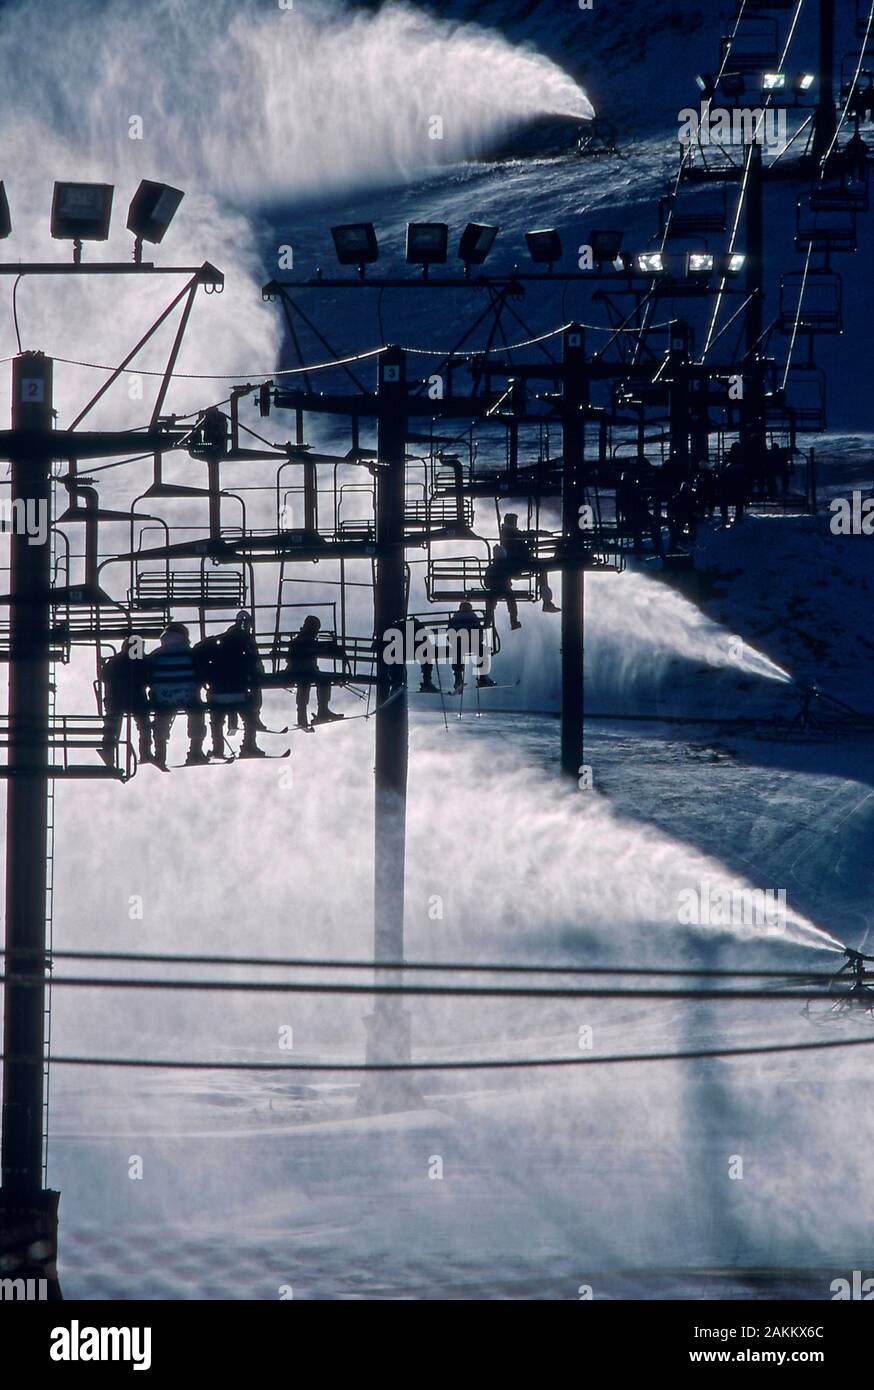 Beschneiungsanlagen produziert Schnee für einen Skihügel Stockfoto